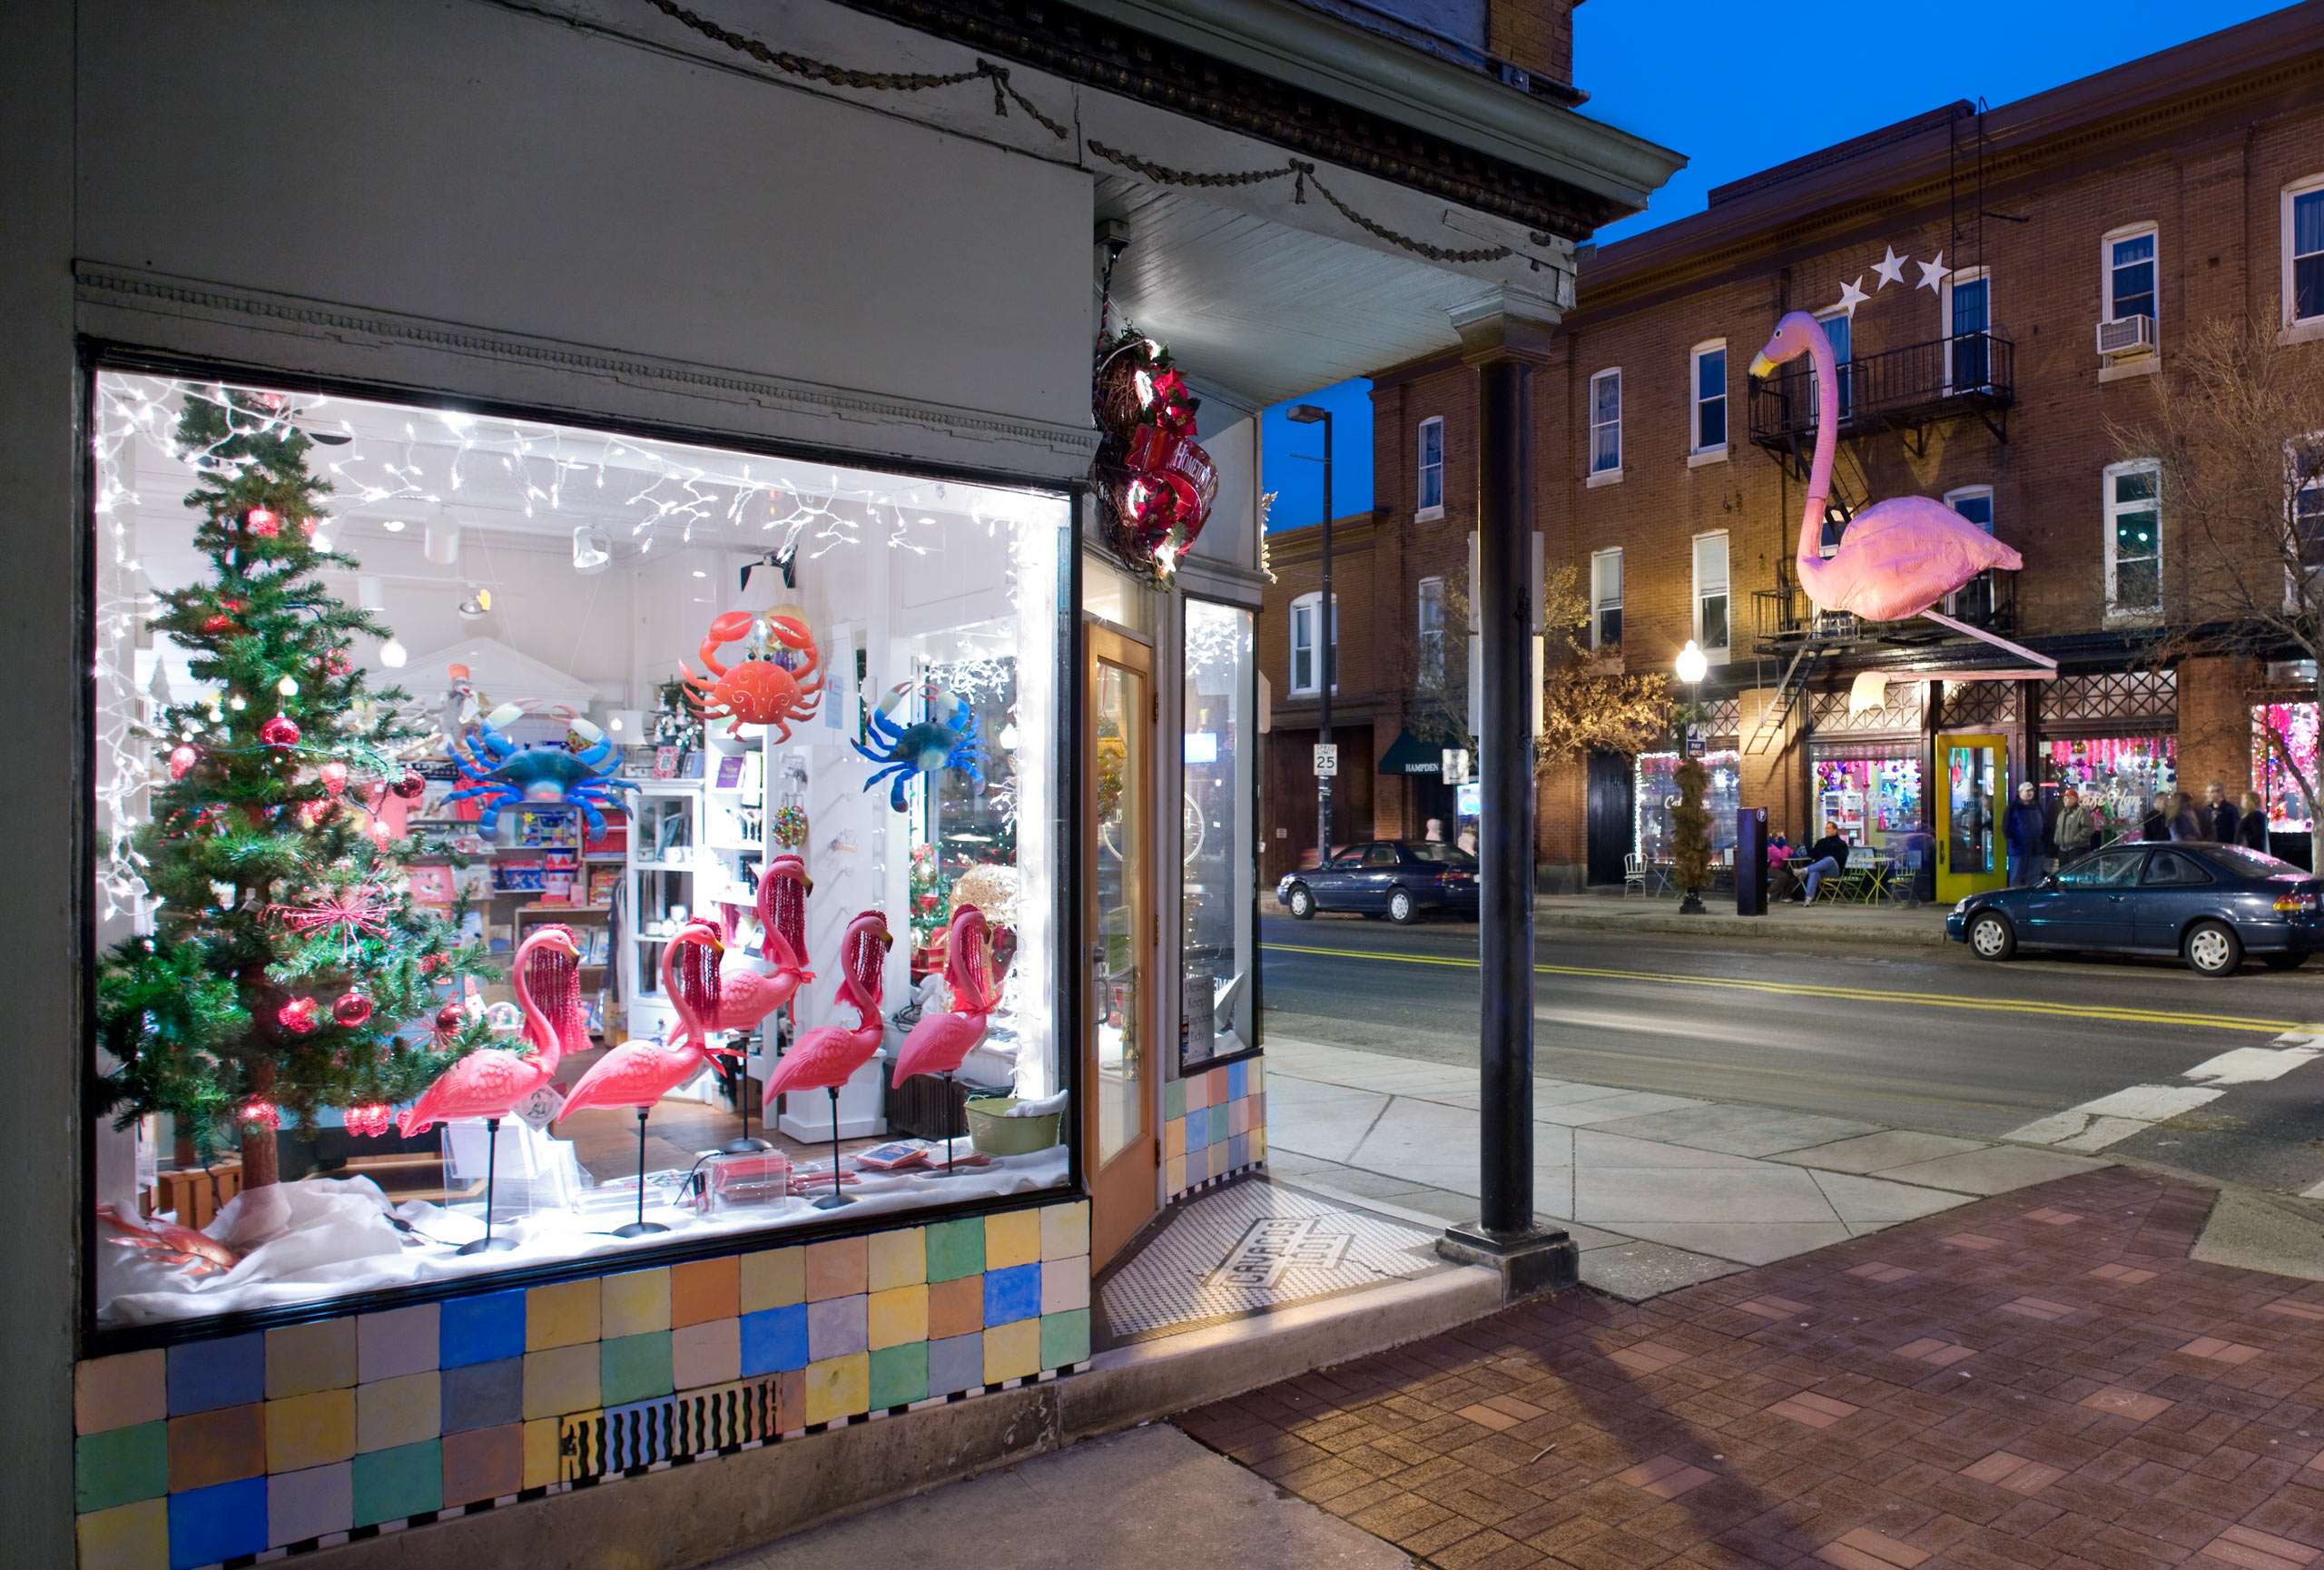 PORTFOLIO - Baltimore - Neighborhoods  #16  Hampden Shop with Christmas Decorations